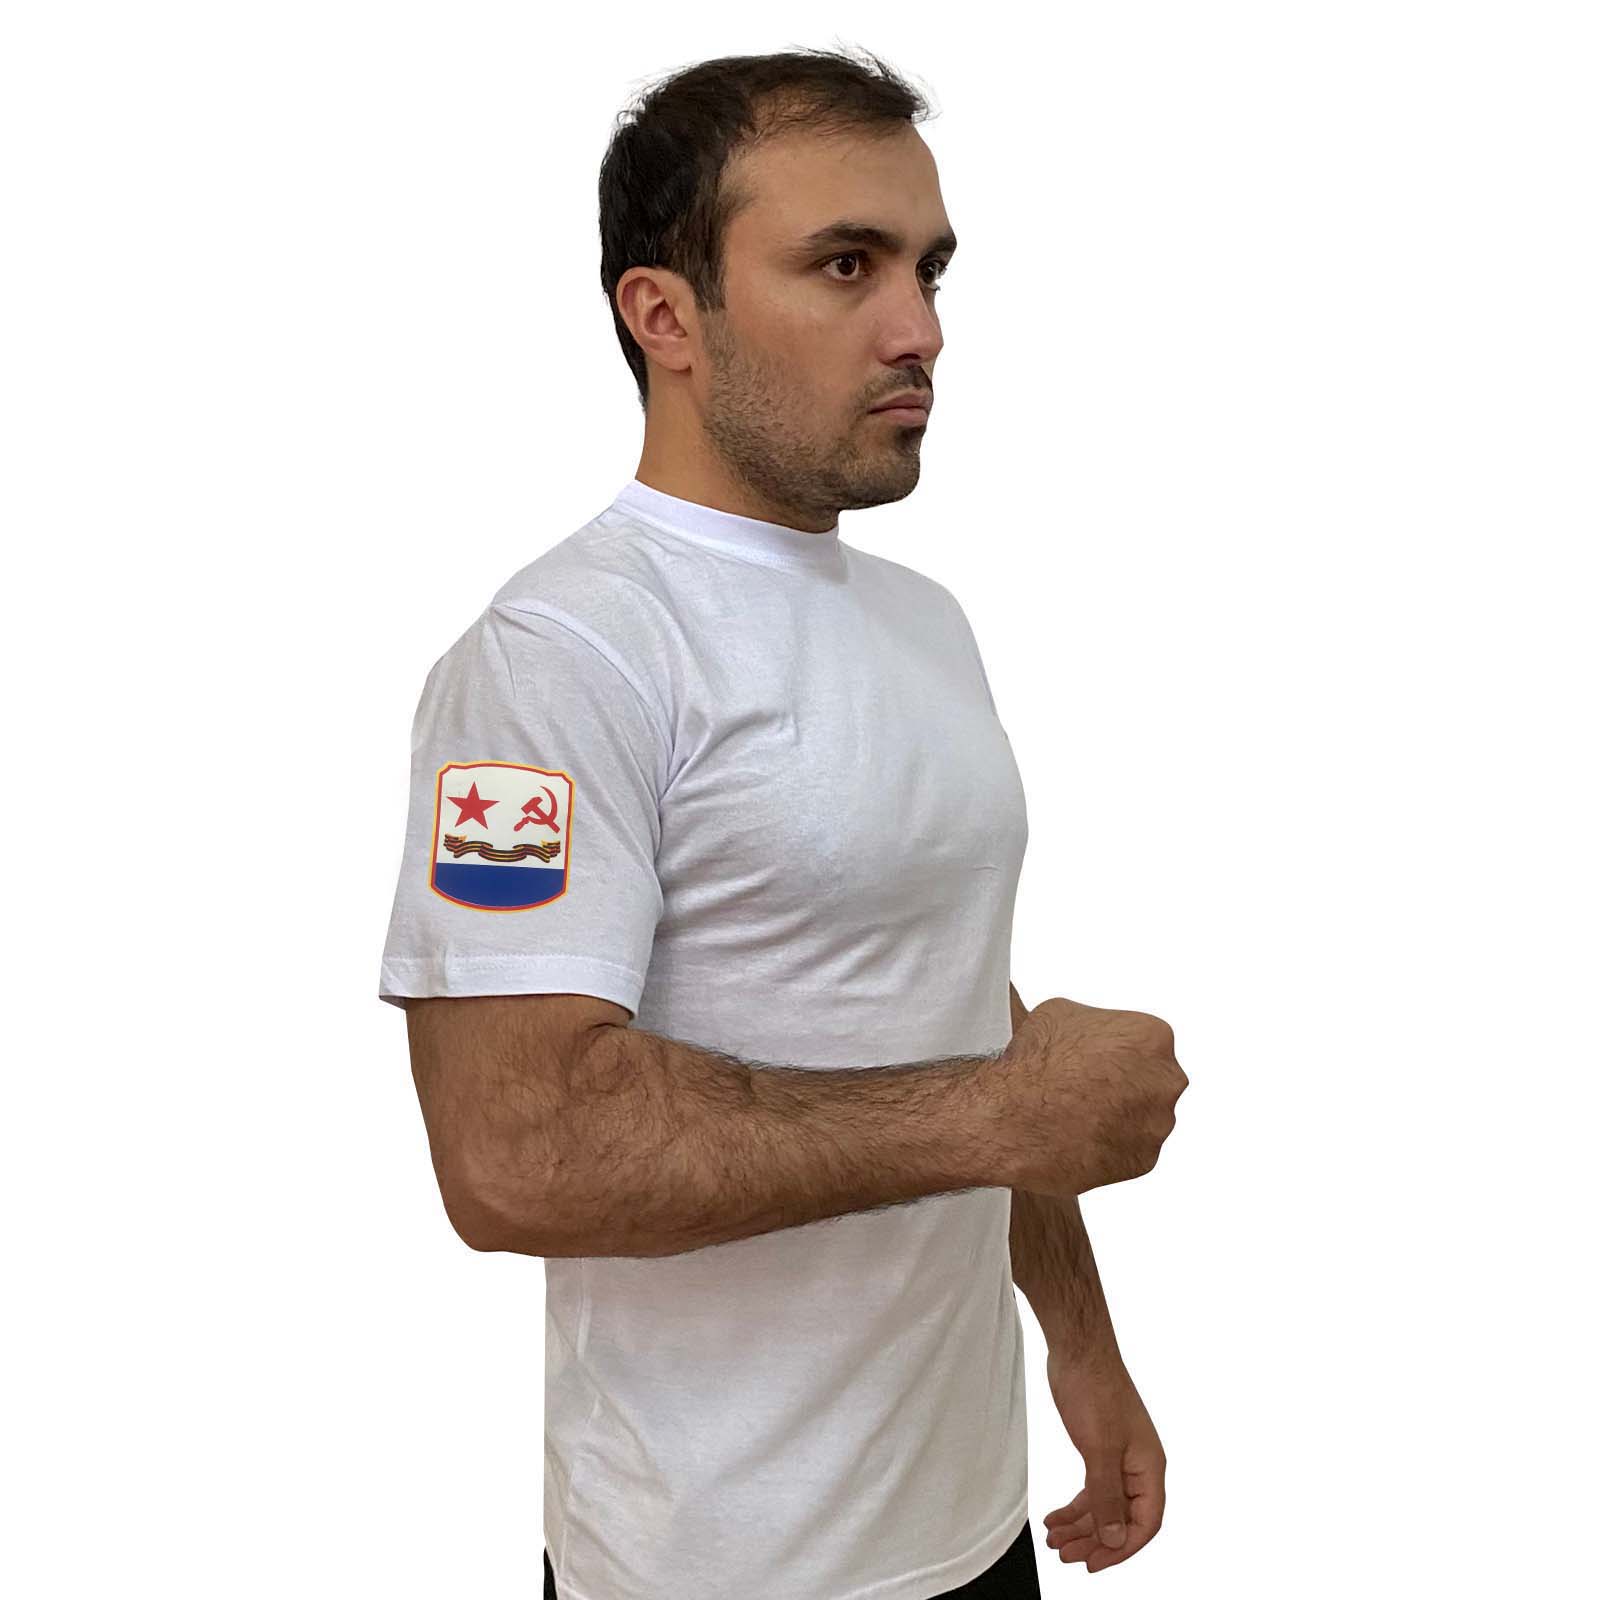 Купить стильную белую футболку с термотрансфером Флаг ВМФ СССР выгодно